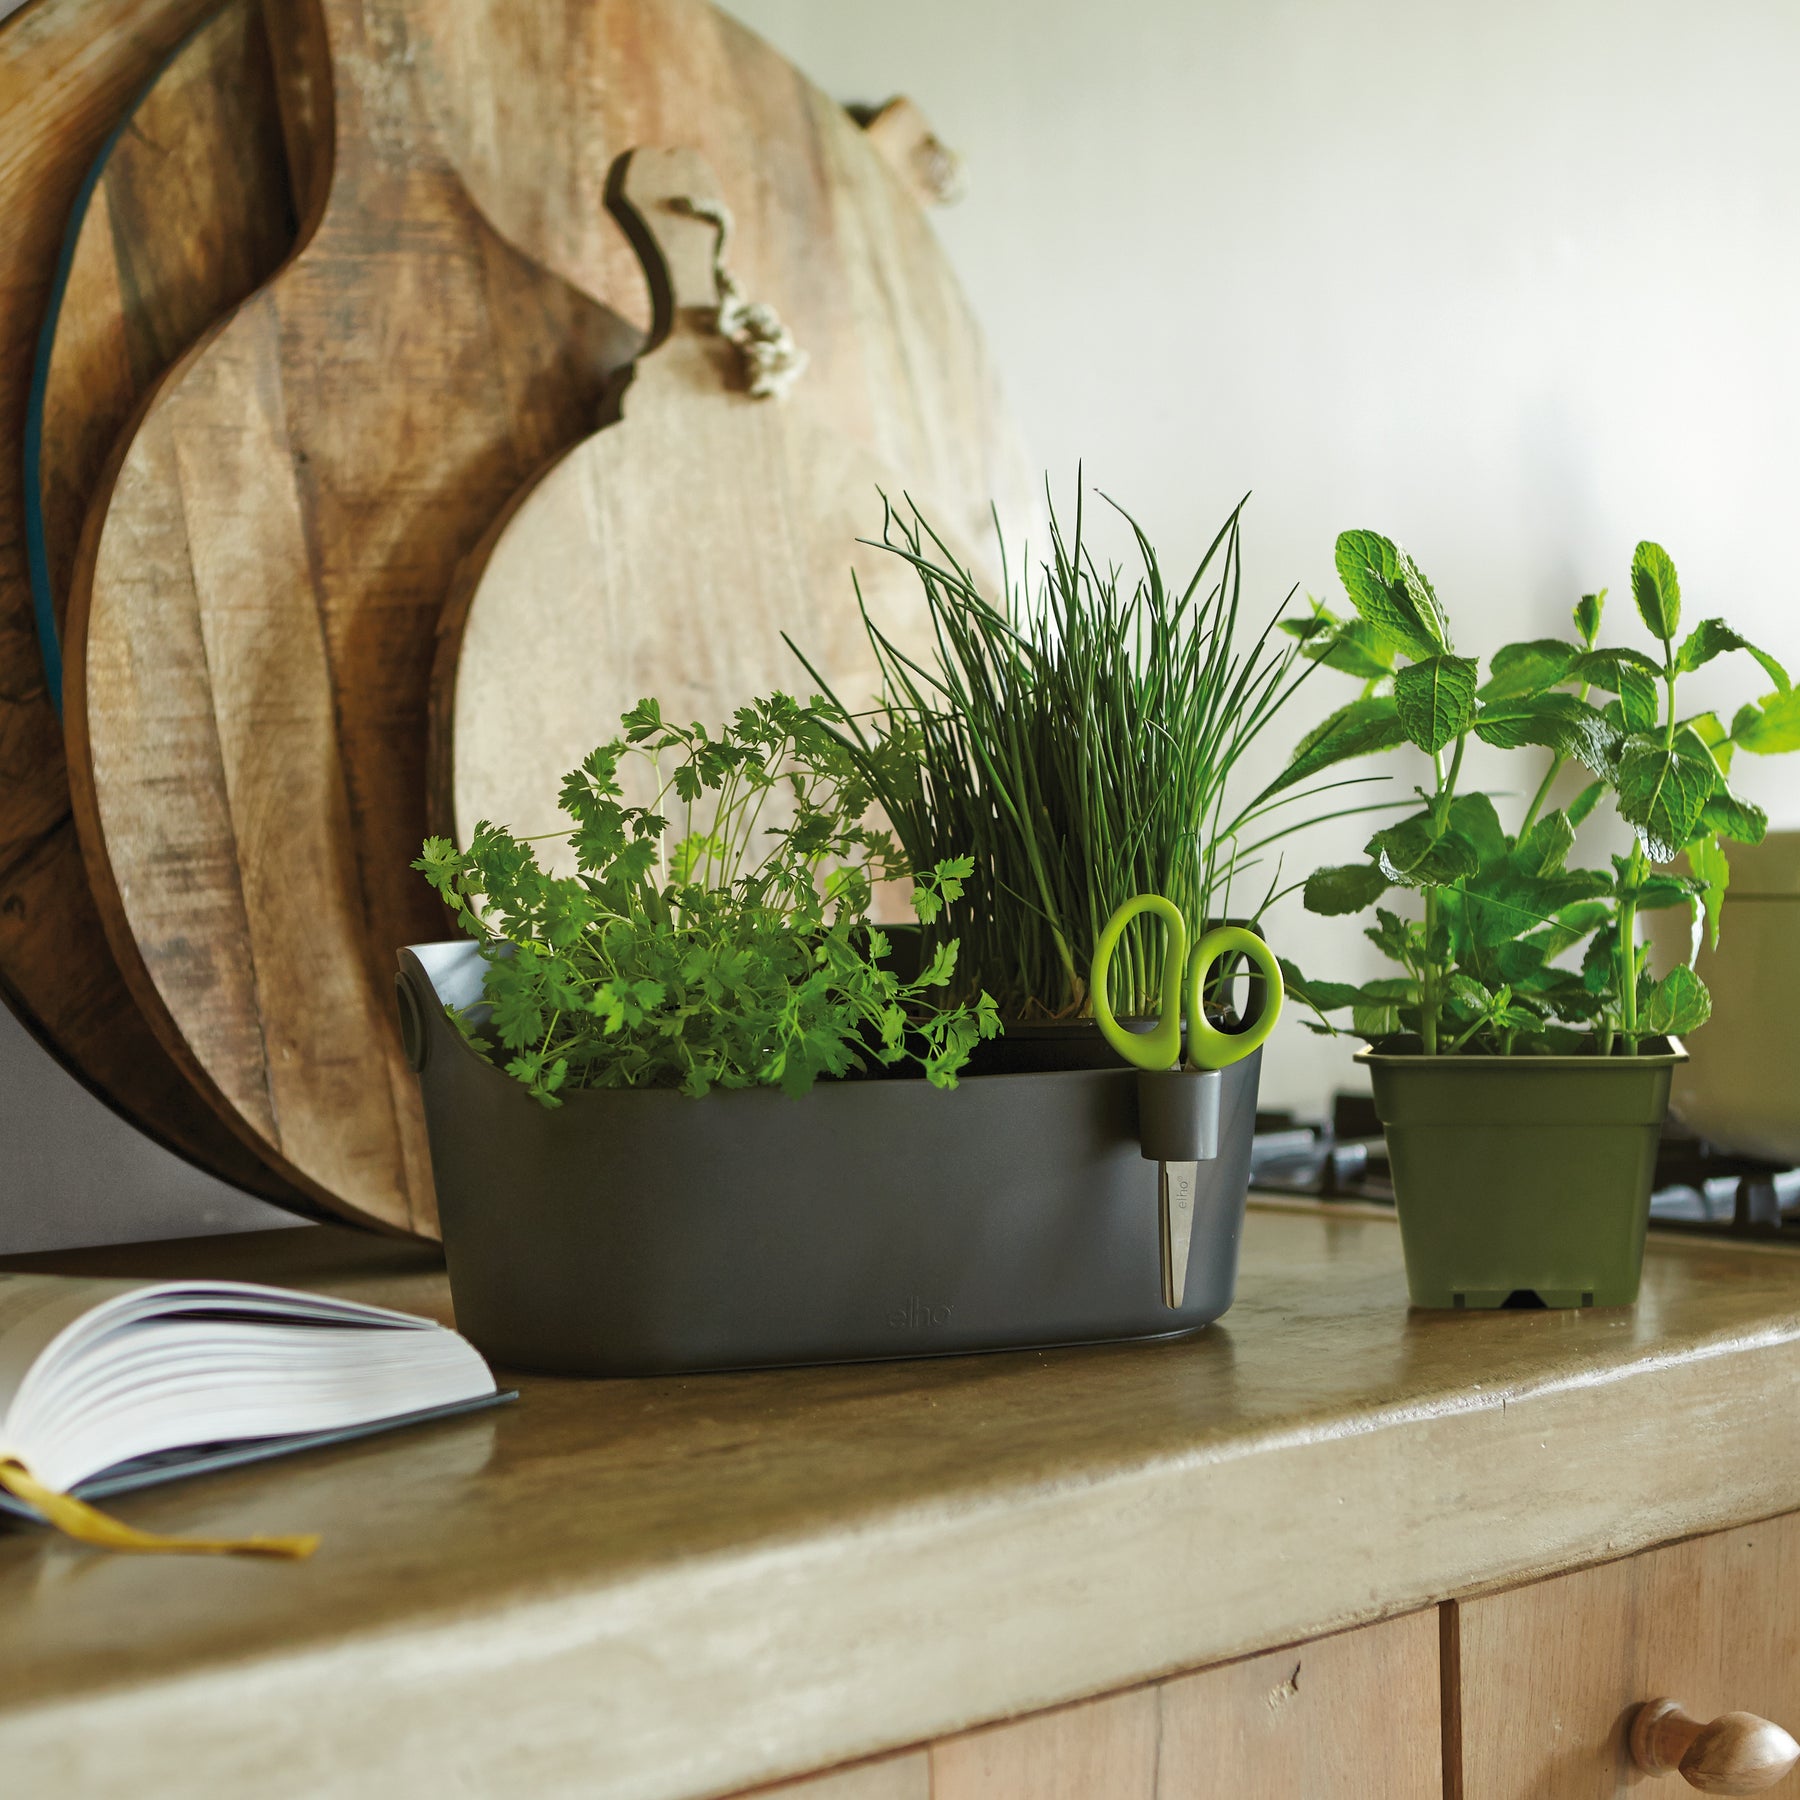 Cache-pot Brussels Herbs Station blanc ELHO - Pots et contenants pour cultiver vos plantes